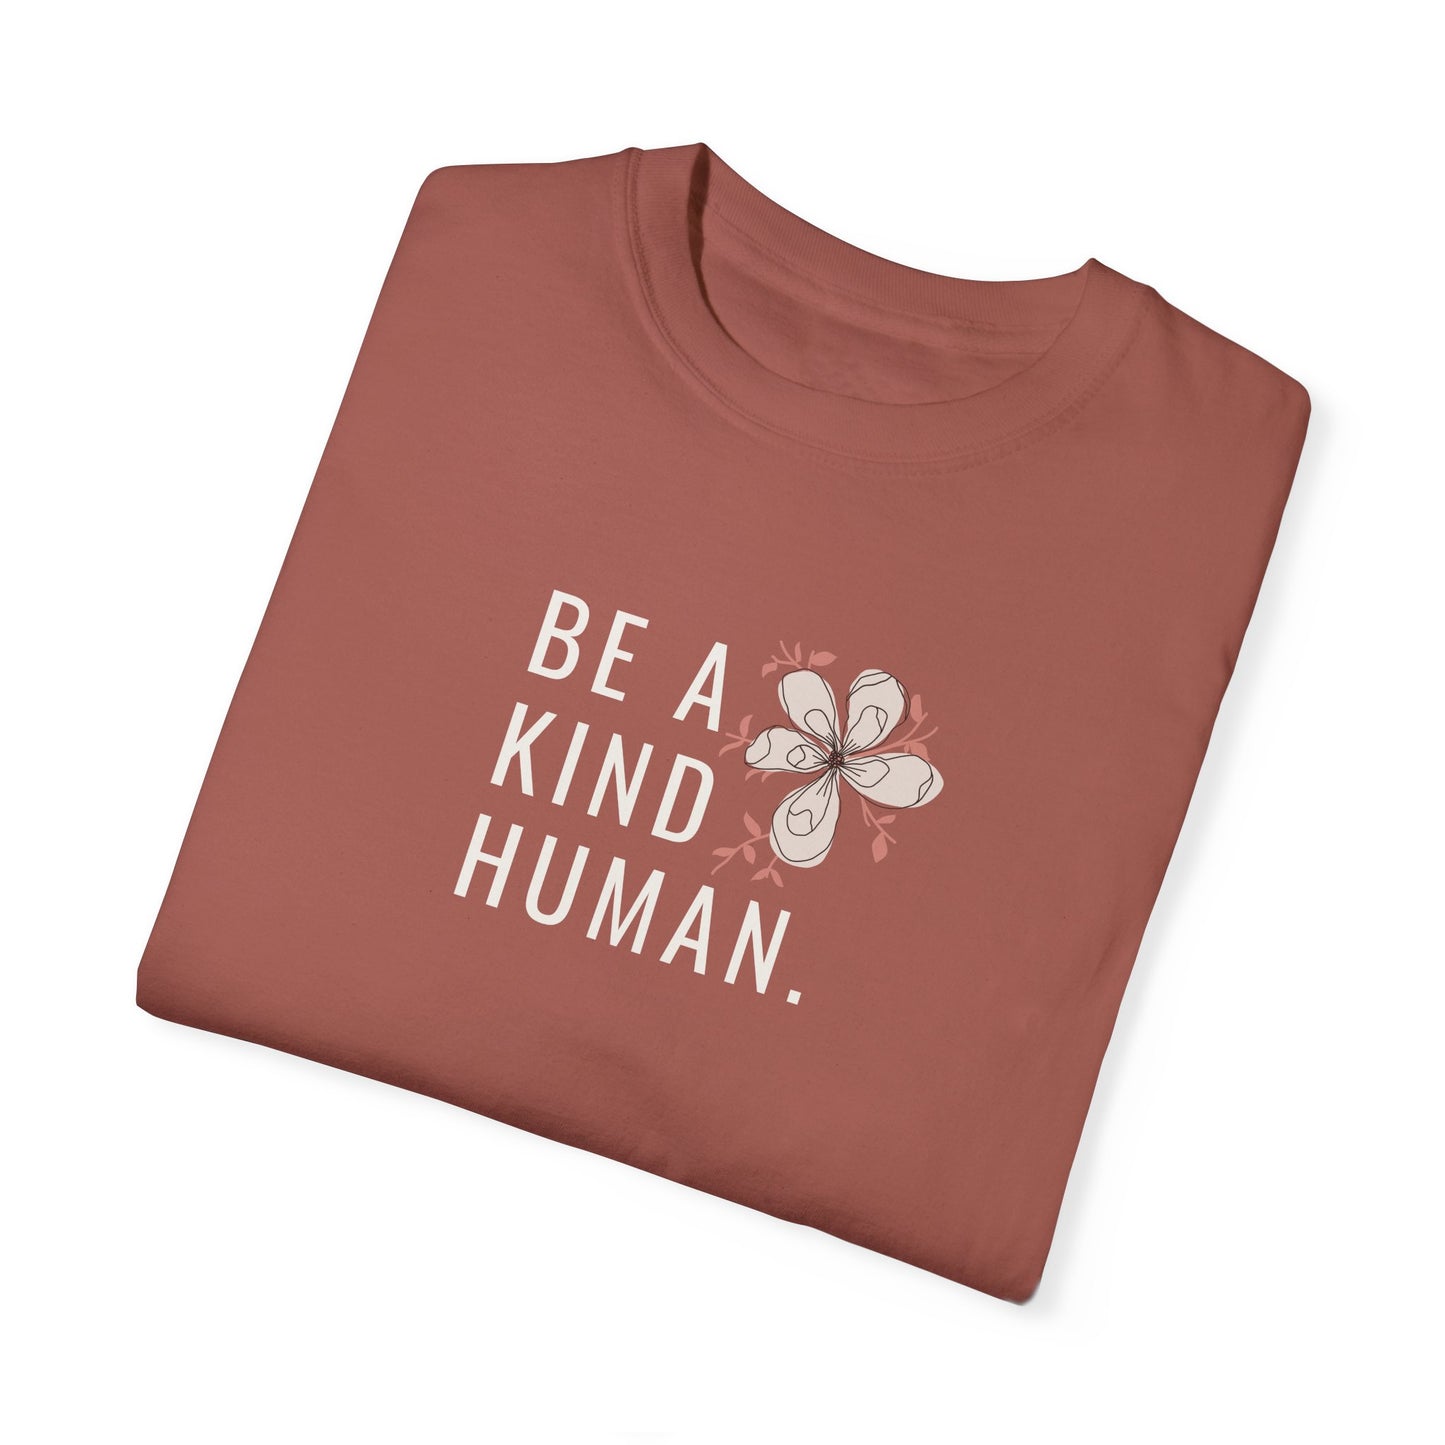 Be a kind Human